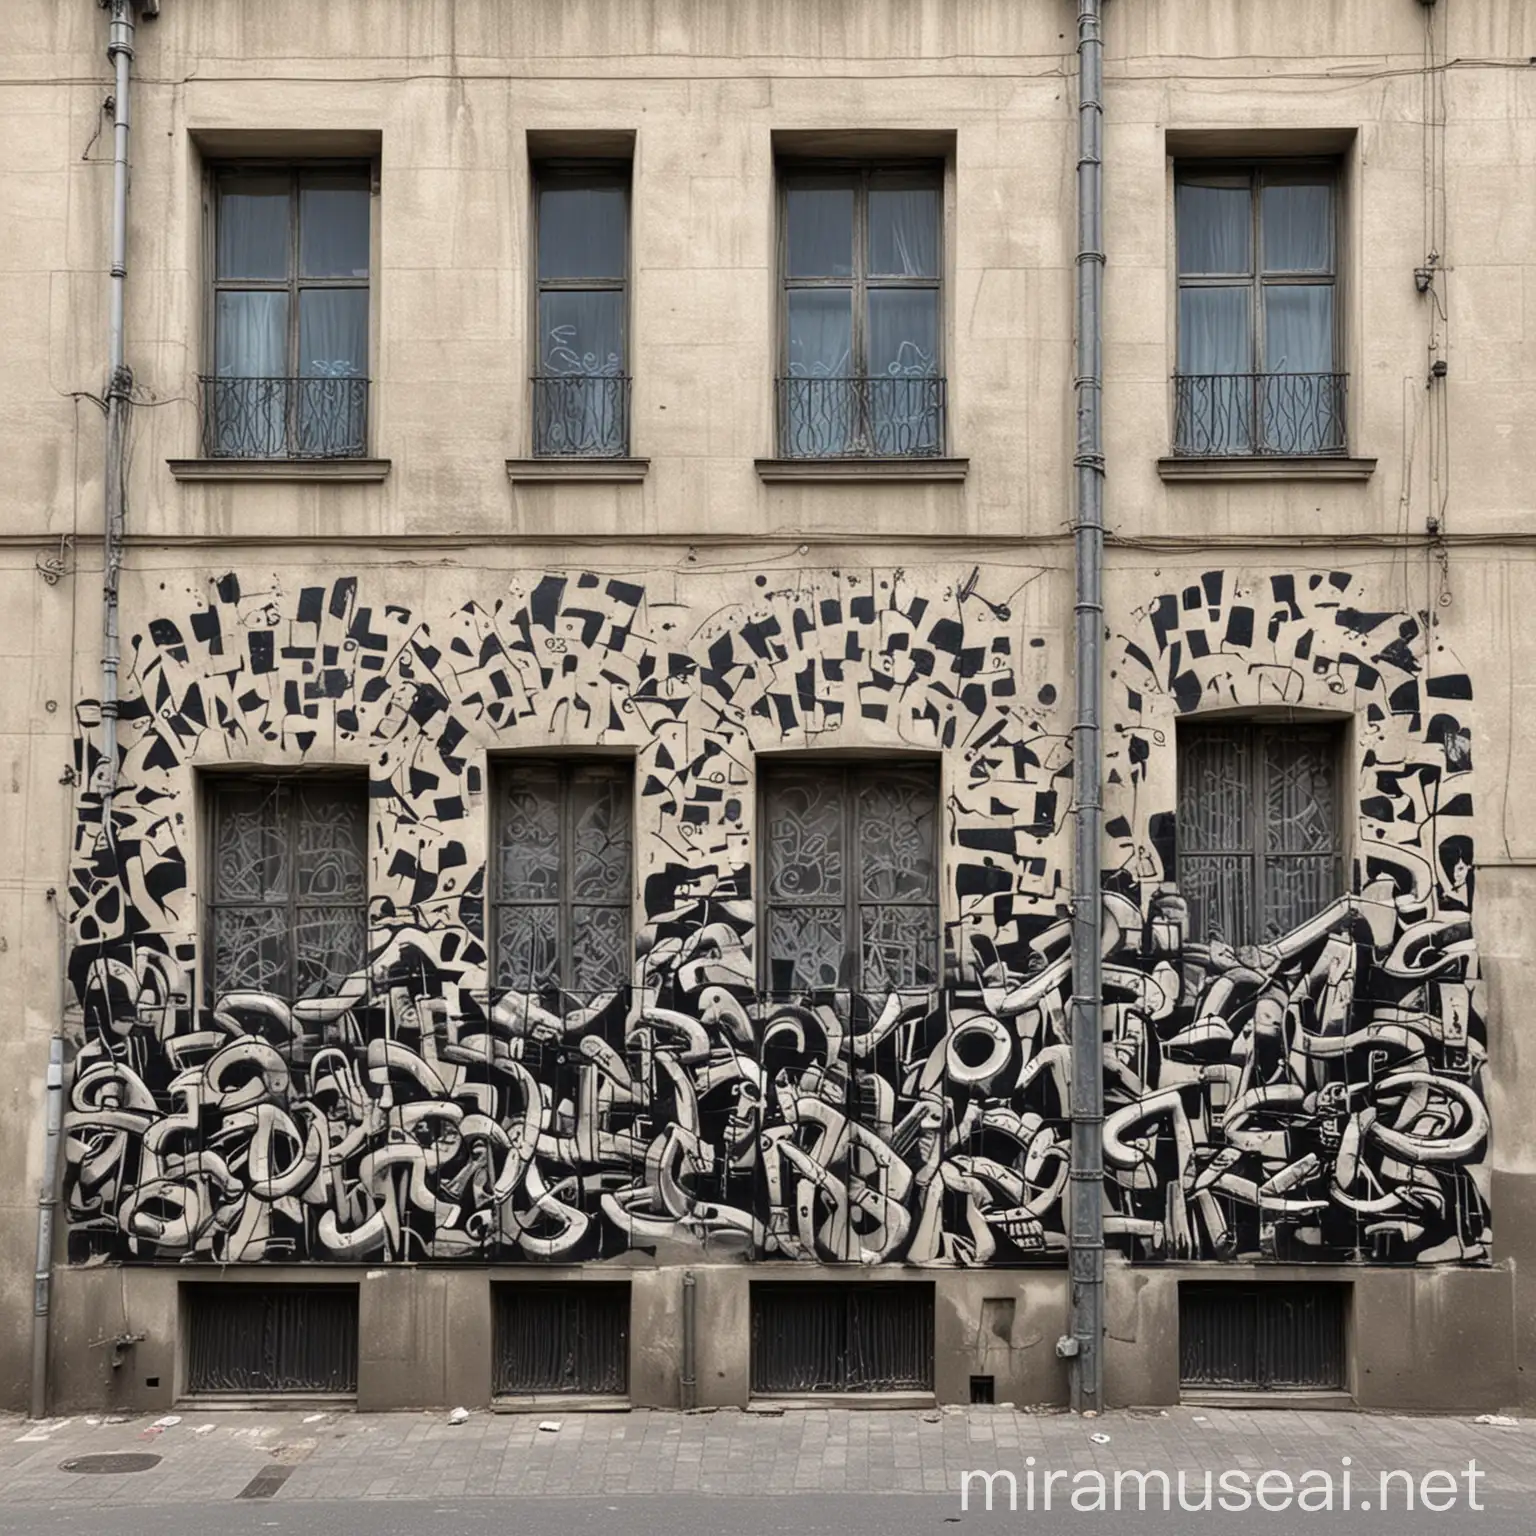 декоративное графити на здании

